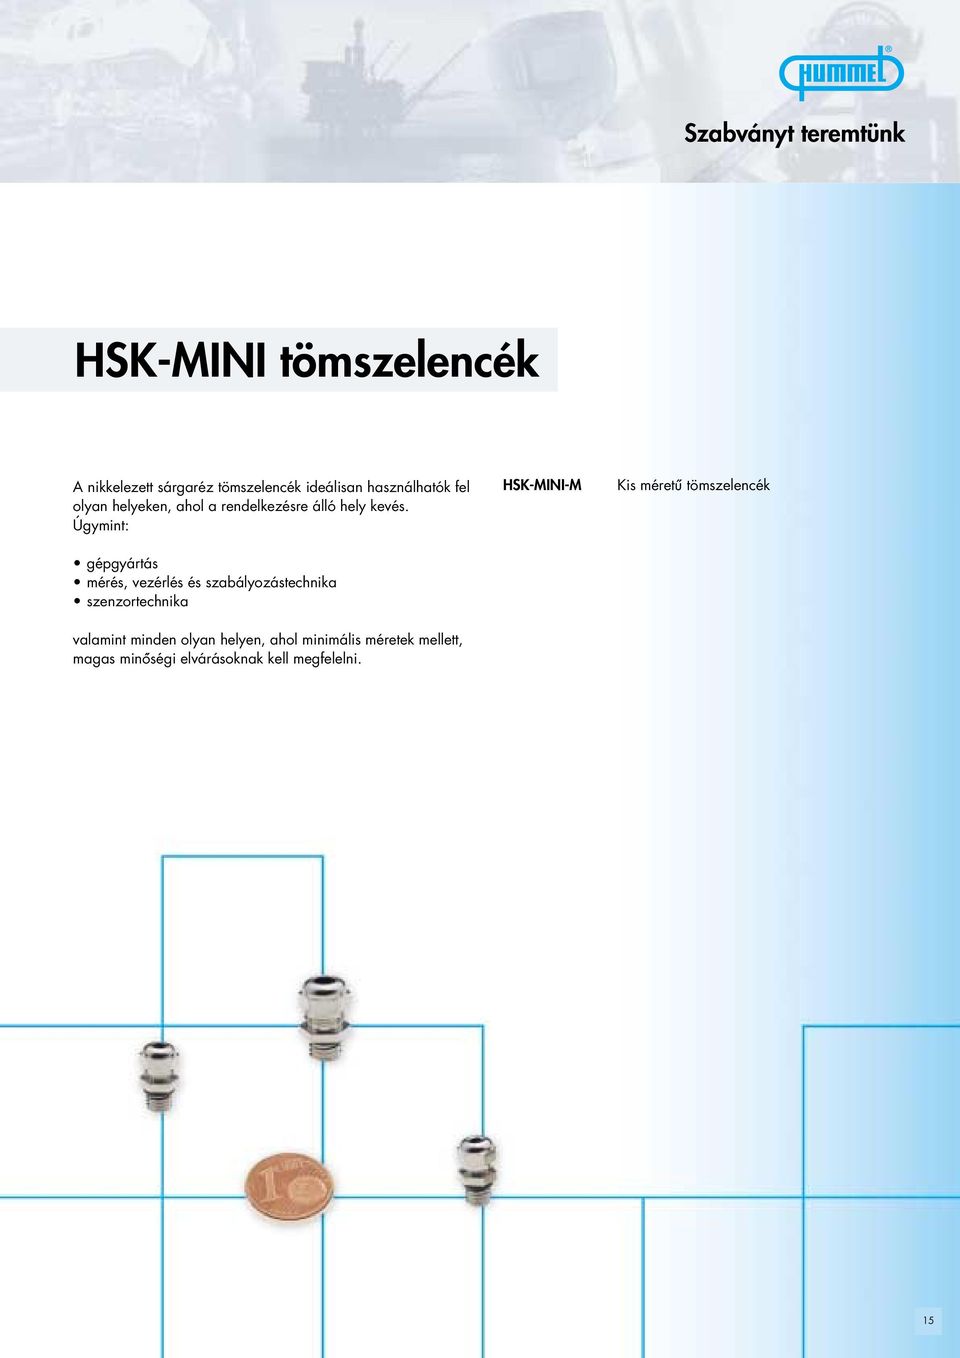 Úgymint: SK-MINI-M Kis méretú tömszelencék gépgyártás mérés, vezérlés és szabályozástechnika